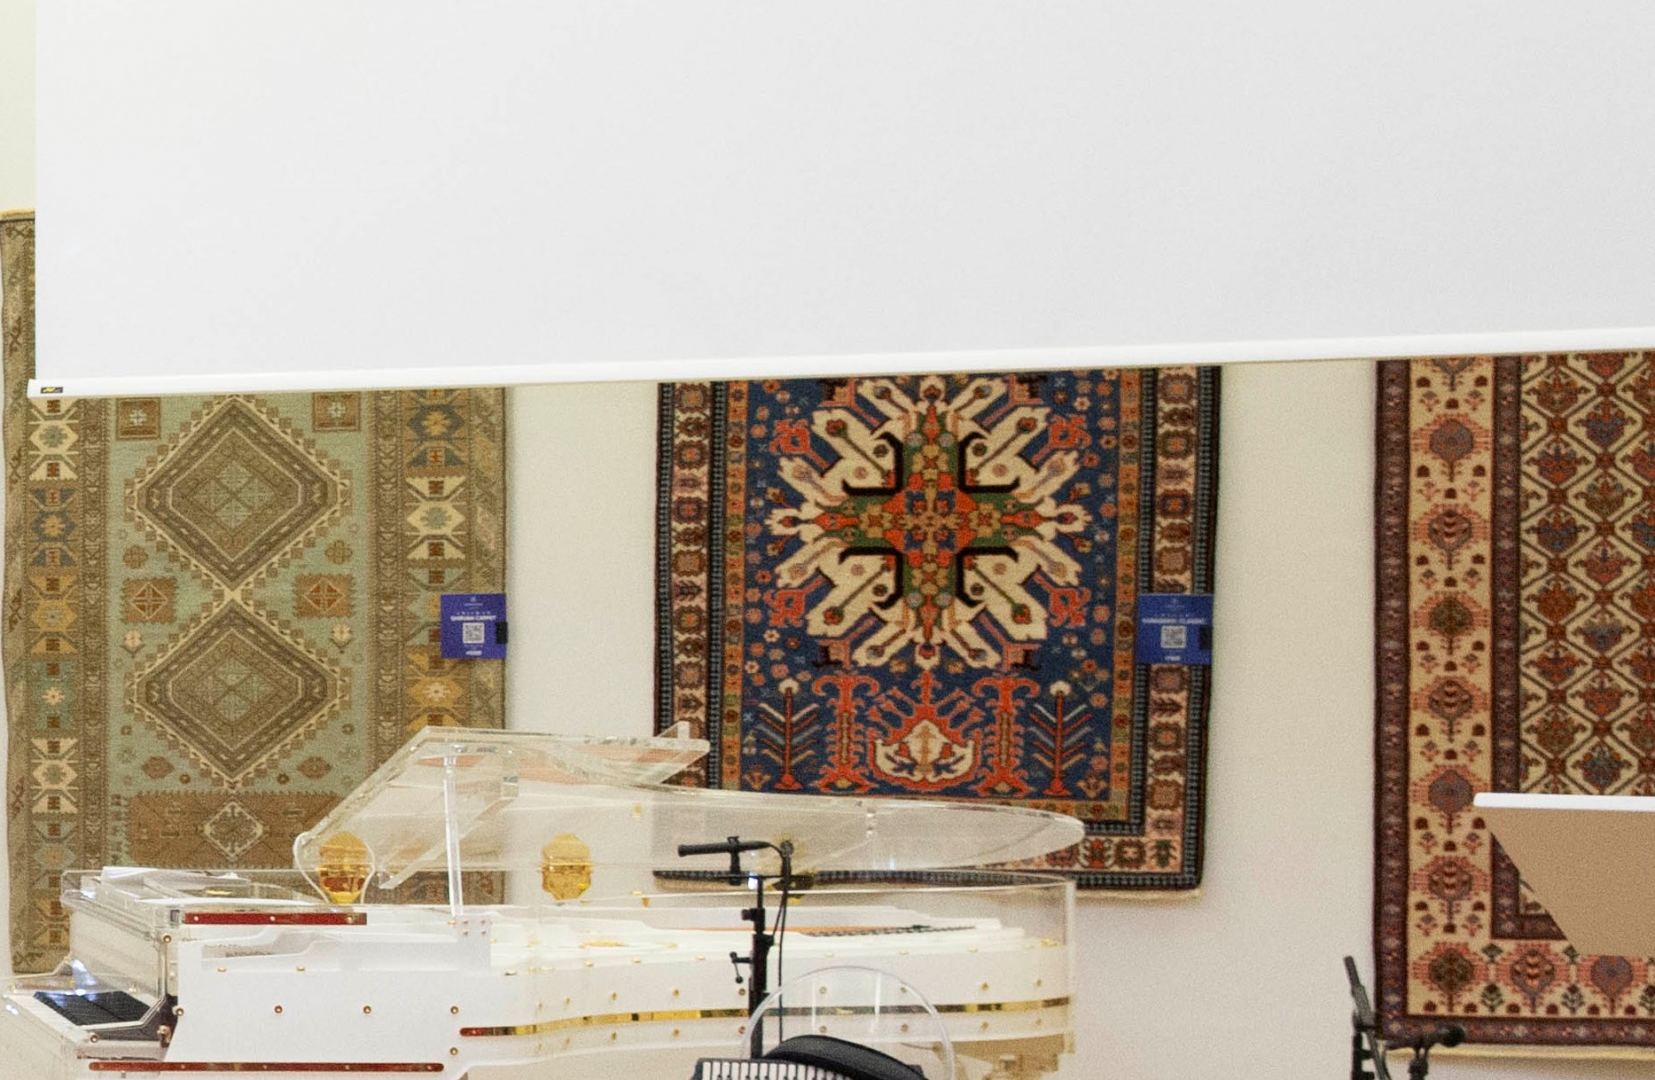 Азербайджанские ковры "Азерхалча" покоряют Австрию - праздничный вечер с музыкой и национальной кухней (ФОТО/ВИДЕО)